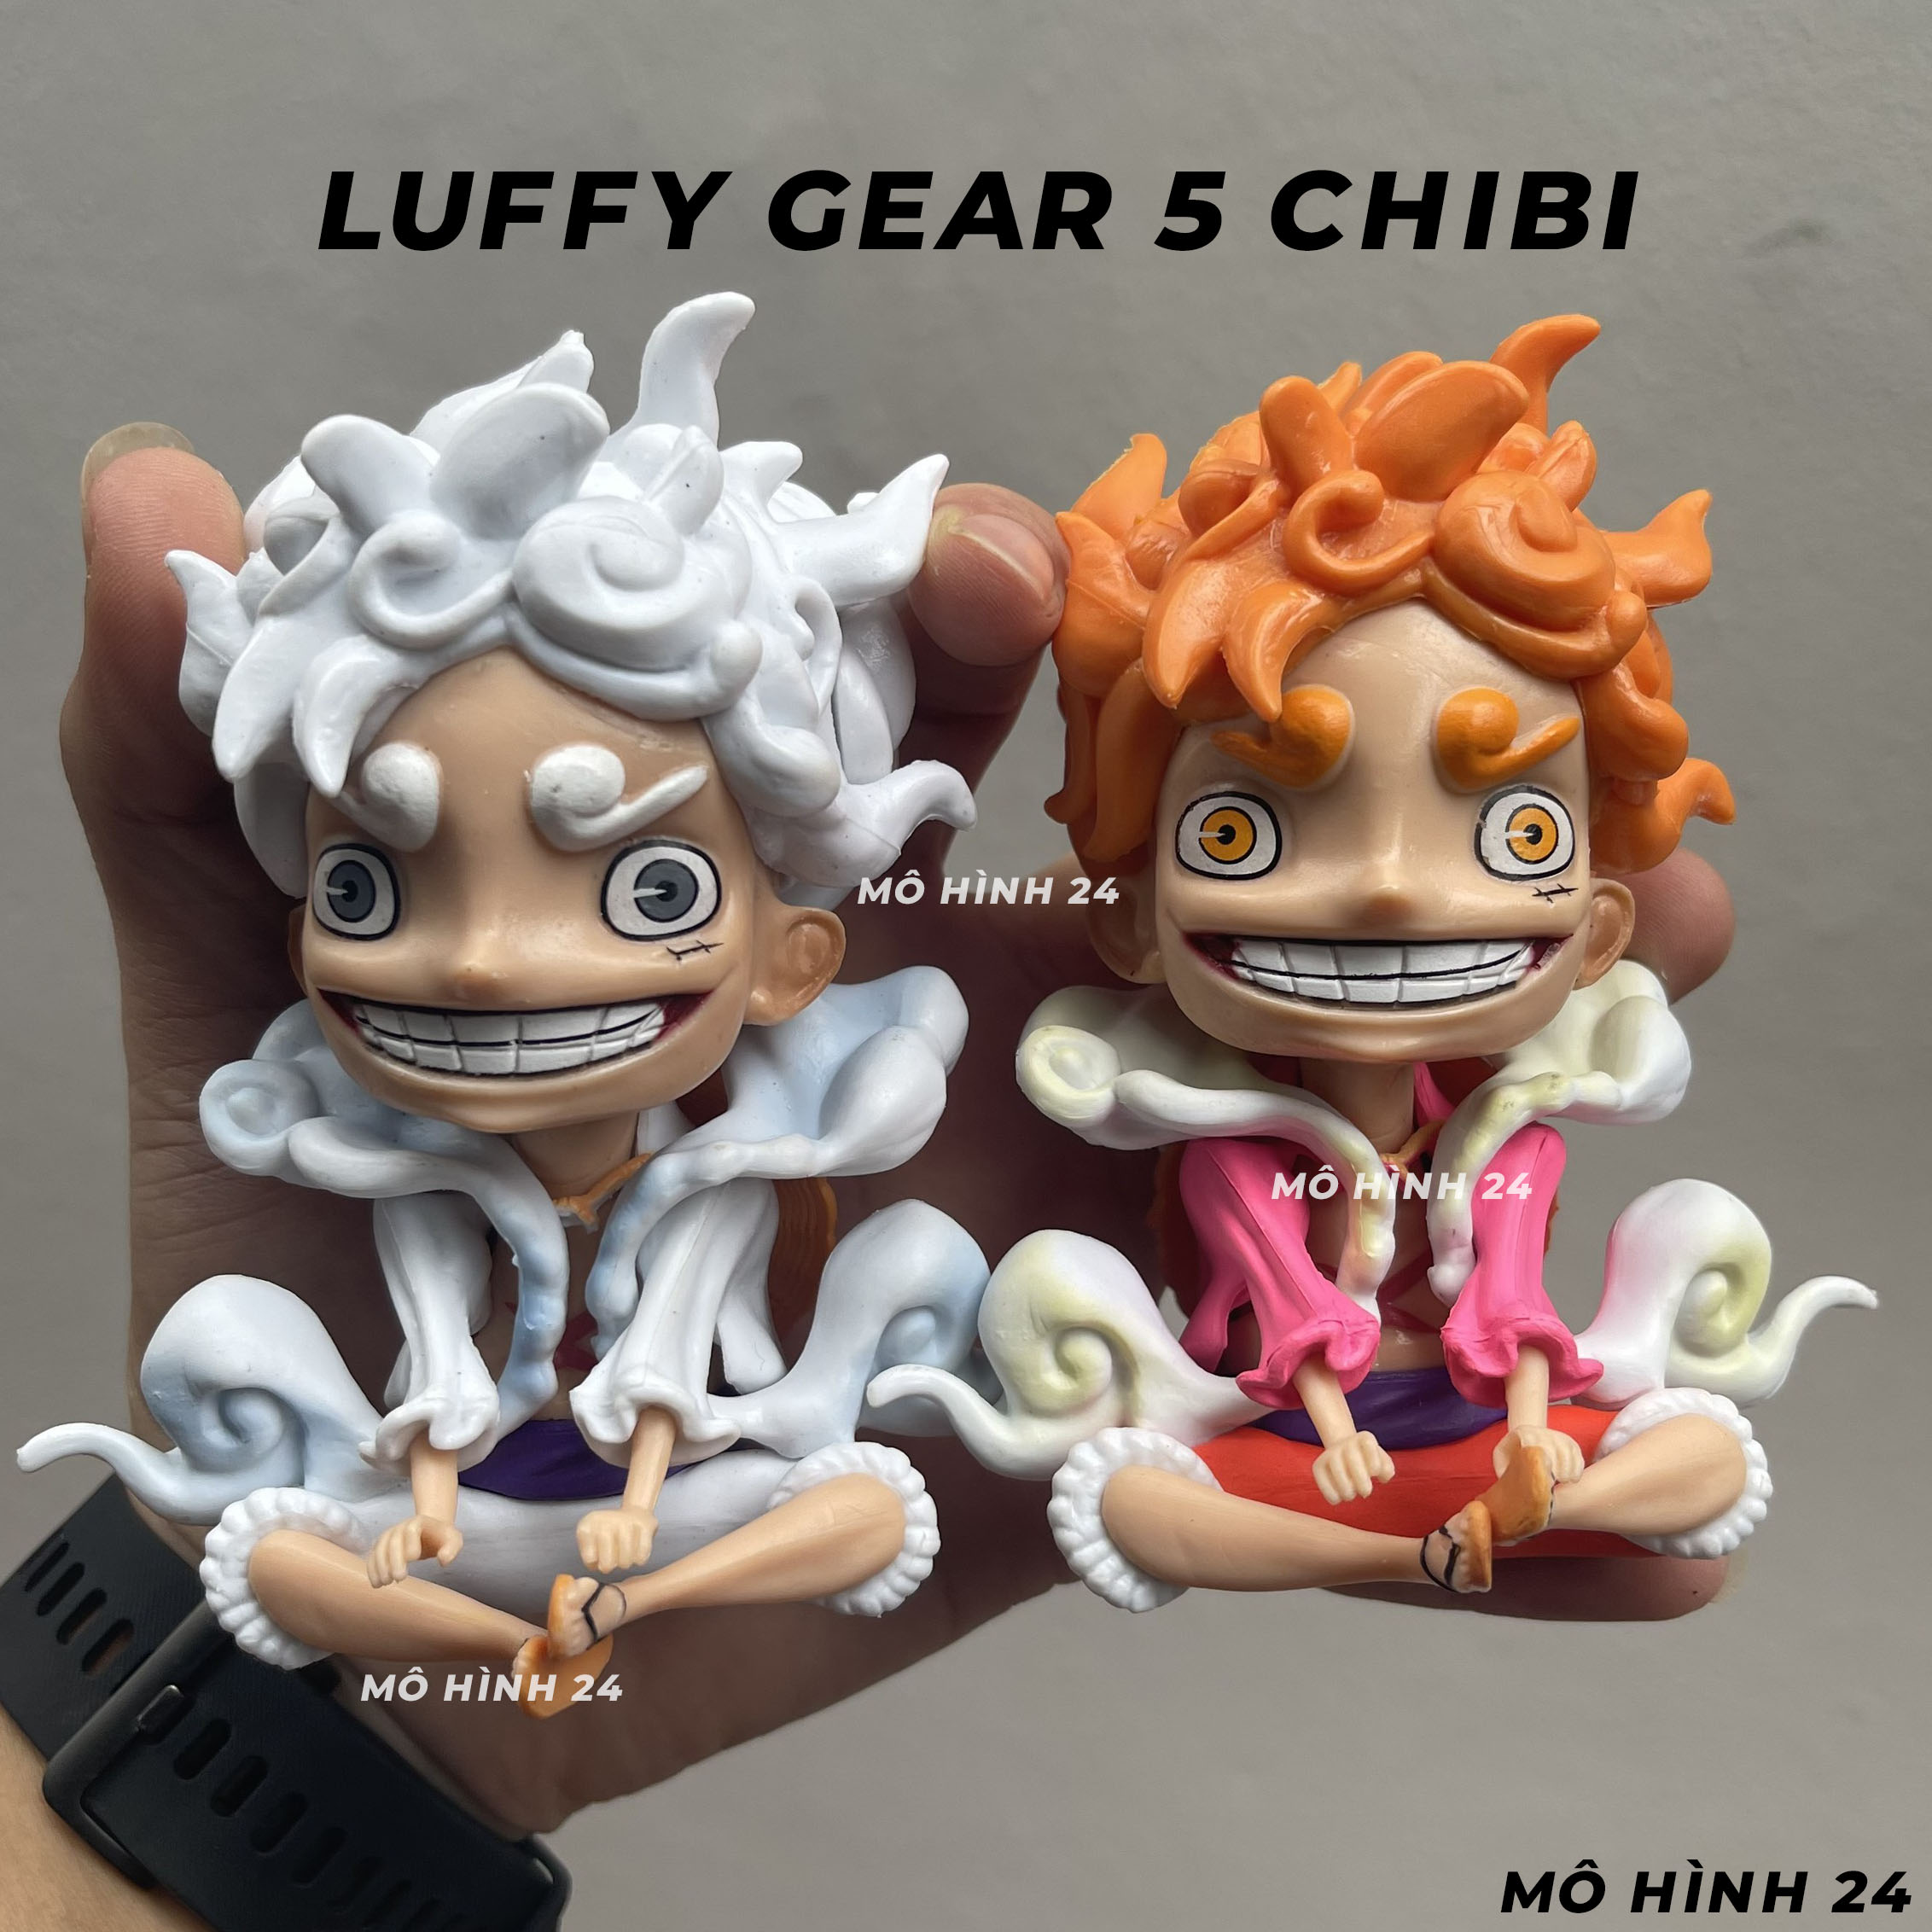 Bức hình Luffy gear 5 chibi không chỉ đơn giản là một tác phẩm nghệ thuật đẹp mắt, mà còn thể hiện được tinh thần của nhân vật hải tặc Luffy - một chiến binh luôn sẵn sàng đánh đổi tất cả để bảo vệ những người thân yêu. Hãy cùng ngắm nhìn bức hình và cảm nhận tinh thần chiến đấu của Luffy.